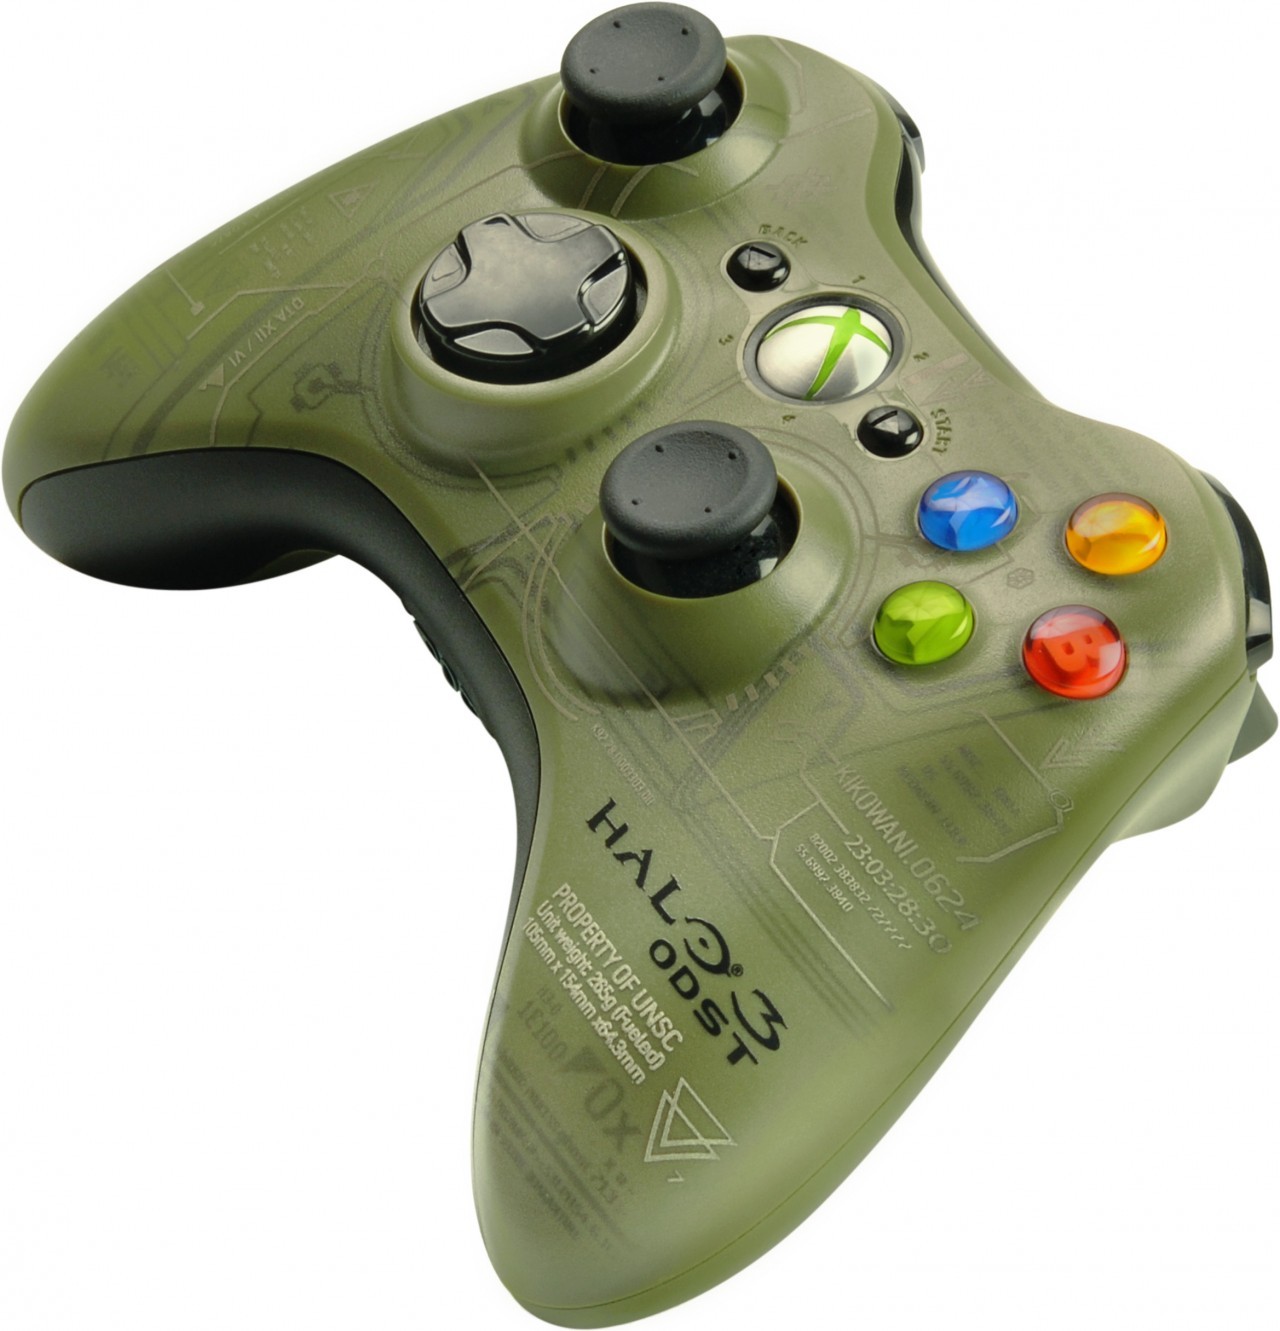 Купить джойстик для xbox 360. Геймпад Xbox 360 Halo. Геймпад Xbox 360 Halo 3. Геймпад Xbox 360 Halo 4. Джойстик Xbox 360 Limited Edition.